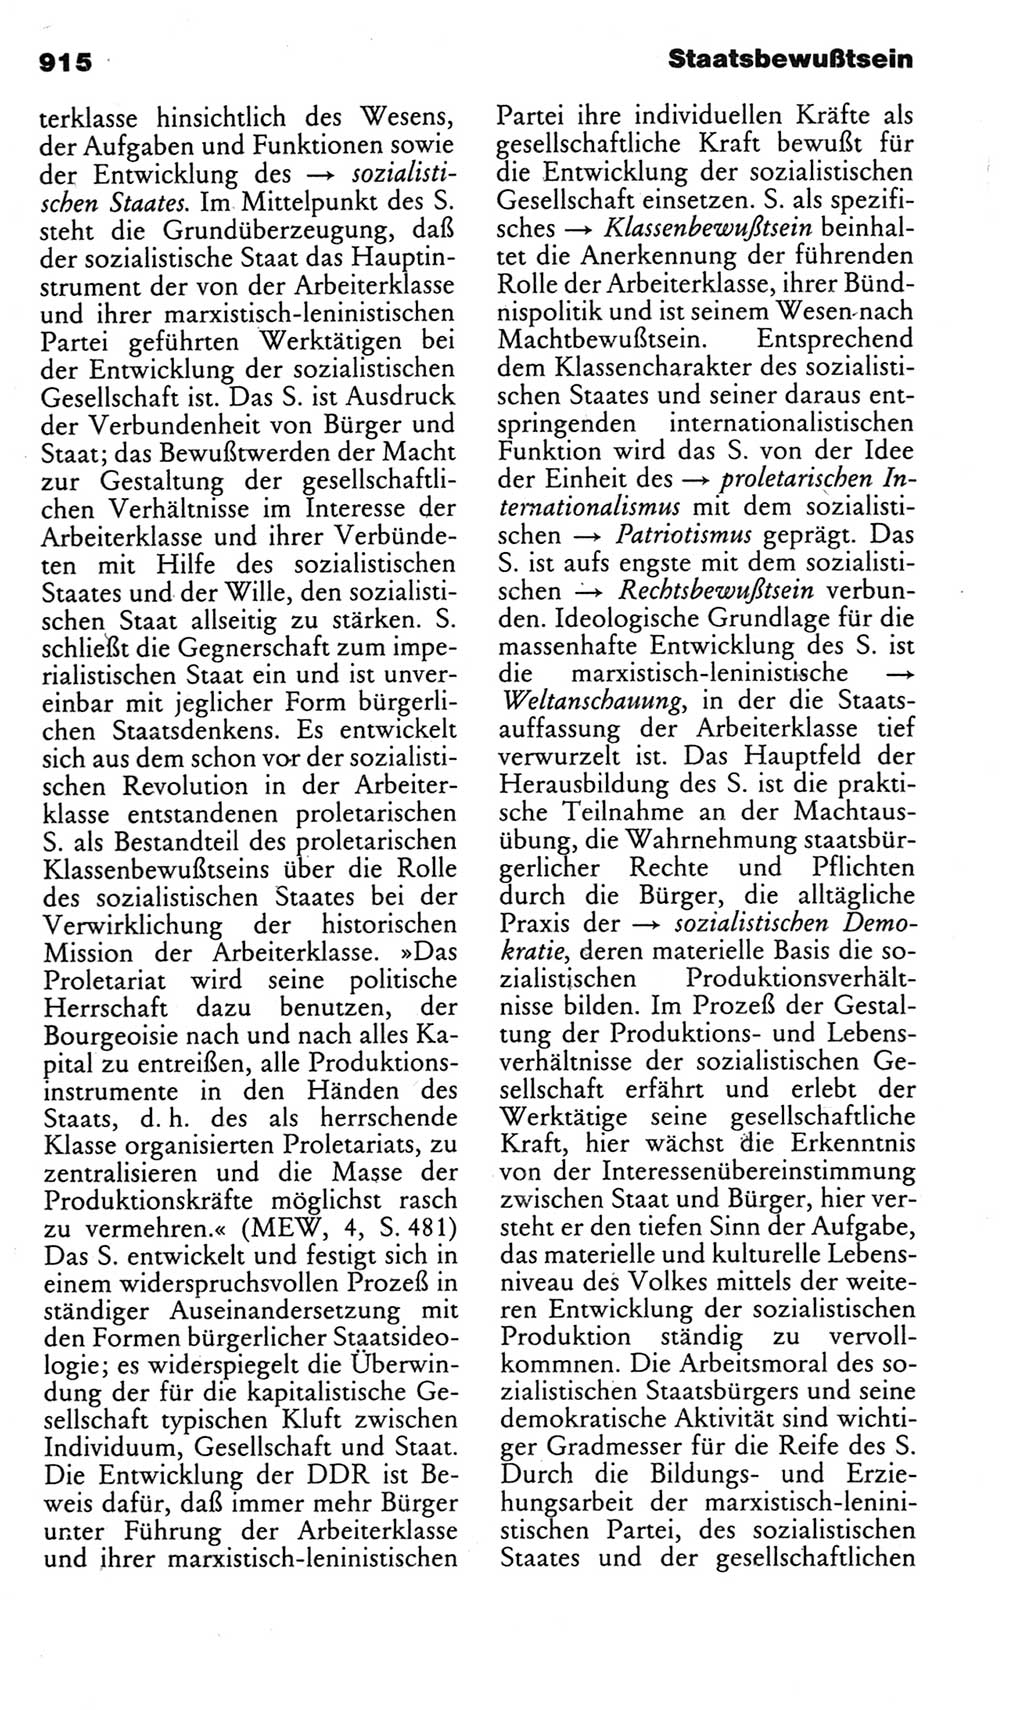 Kleines politisches Wörterbuch [Deutsche Demokratische Republik (DDR)] 1983, Seite 915 (Kl. pol. Wb. DDR 1983, S. 915)